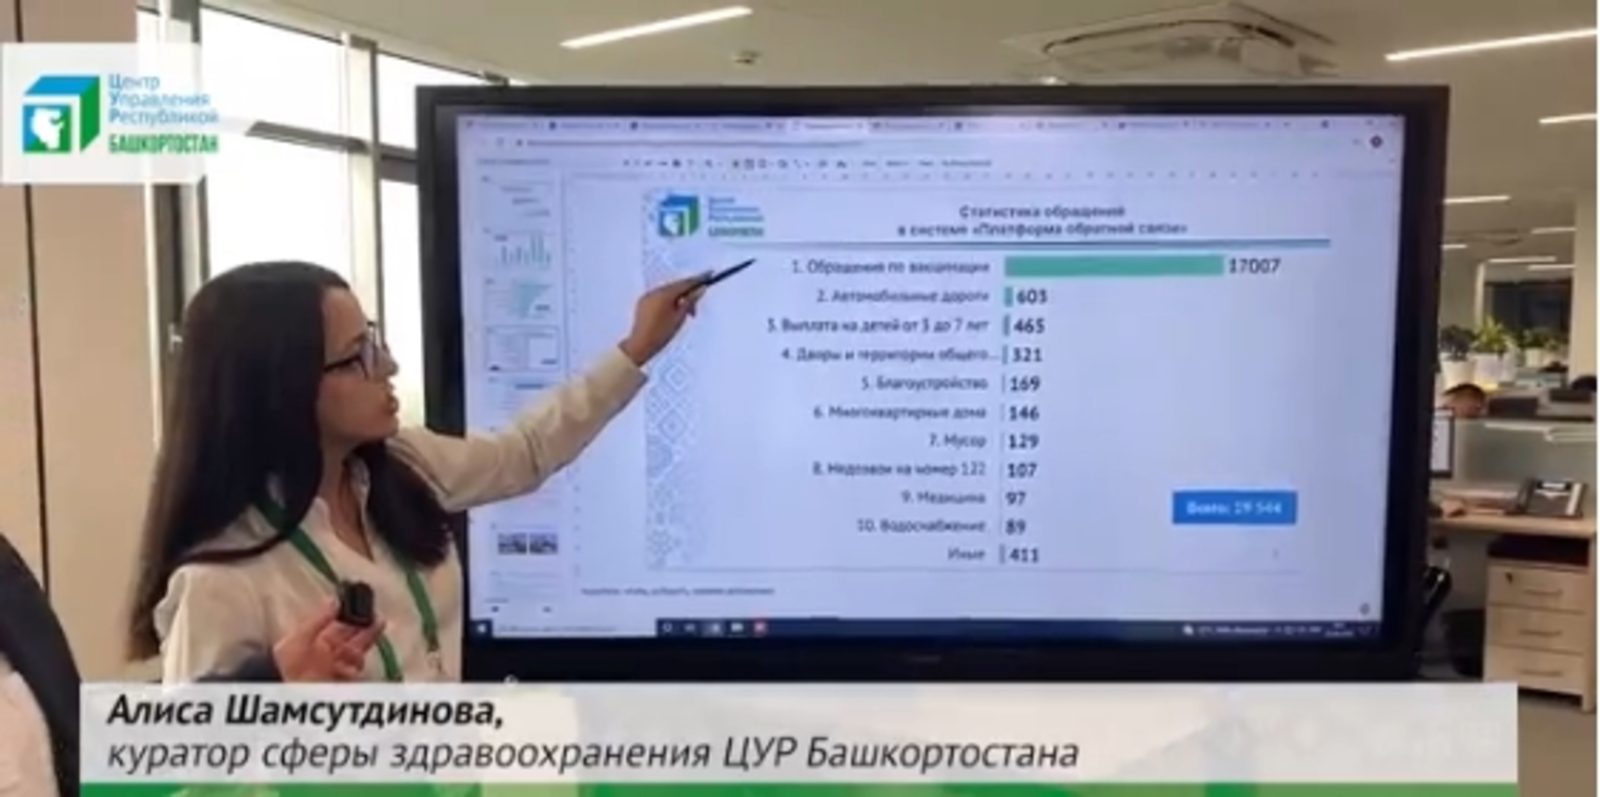 1418 сообщений на тему вакцинации и получения сертификатов поступили в системы ЦУР Башкортостана с начала года